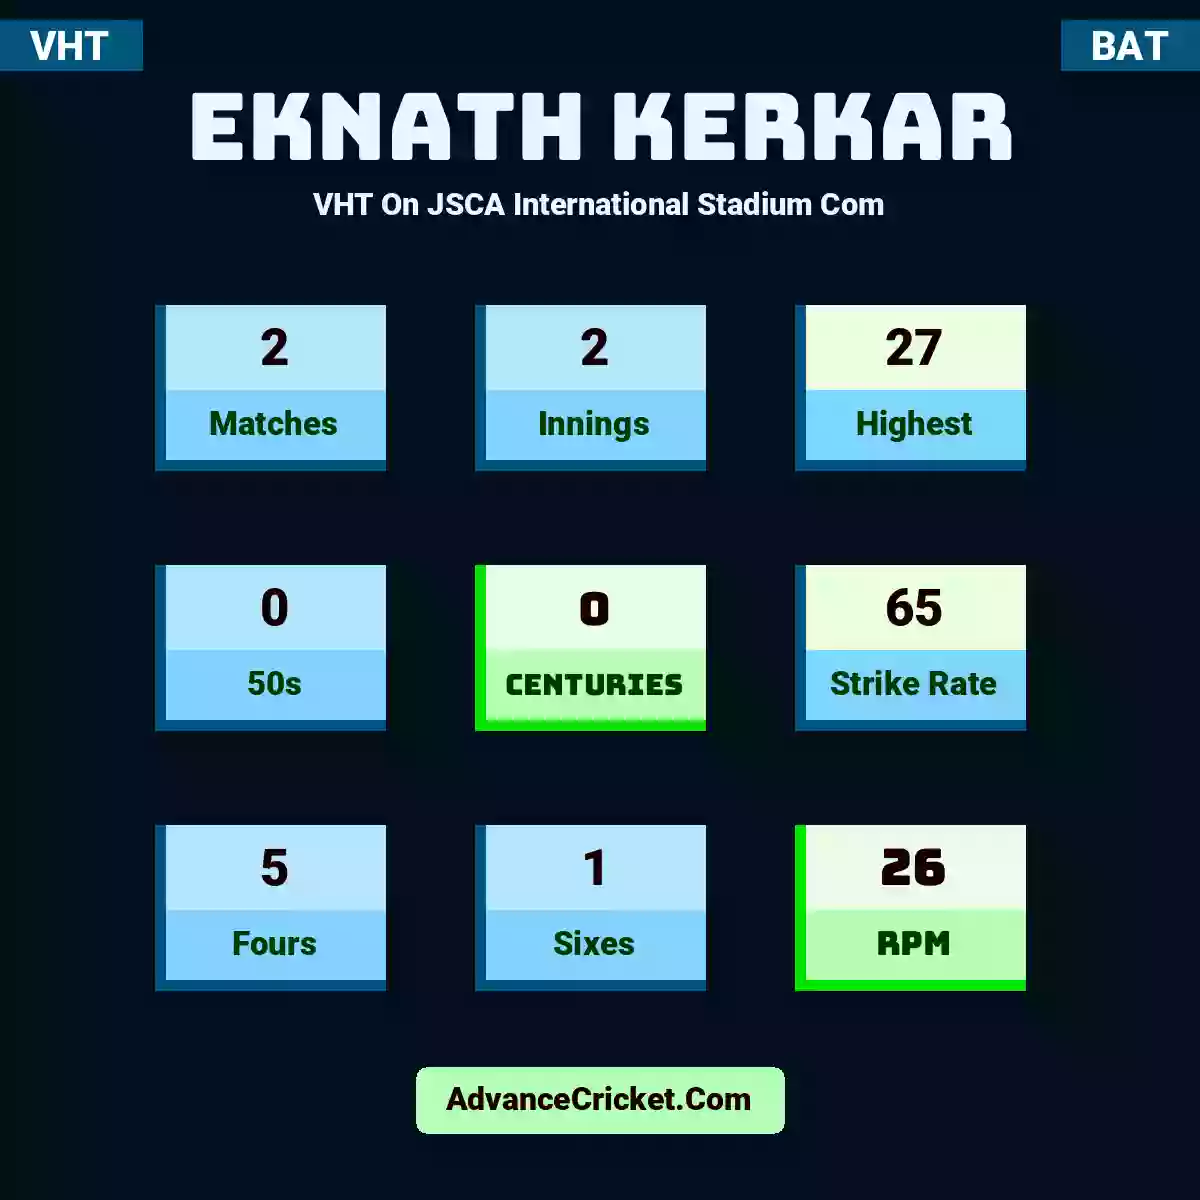 Eknath Kerkar VHT  On JSCA International Stadium Com, Eknath Kerkar played 2 matches, scored 27 runs as highest, 0 half-centuries, and 0 centuries, with a strike rate of 65. E.Kerkar hit 5 fours and 1 sixes, with an RPM of 26.